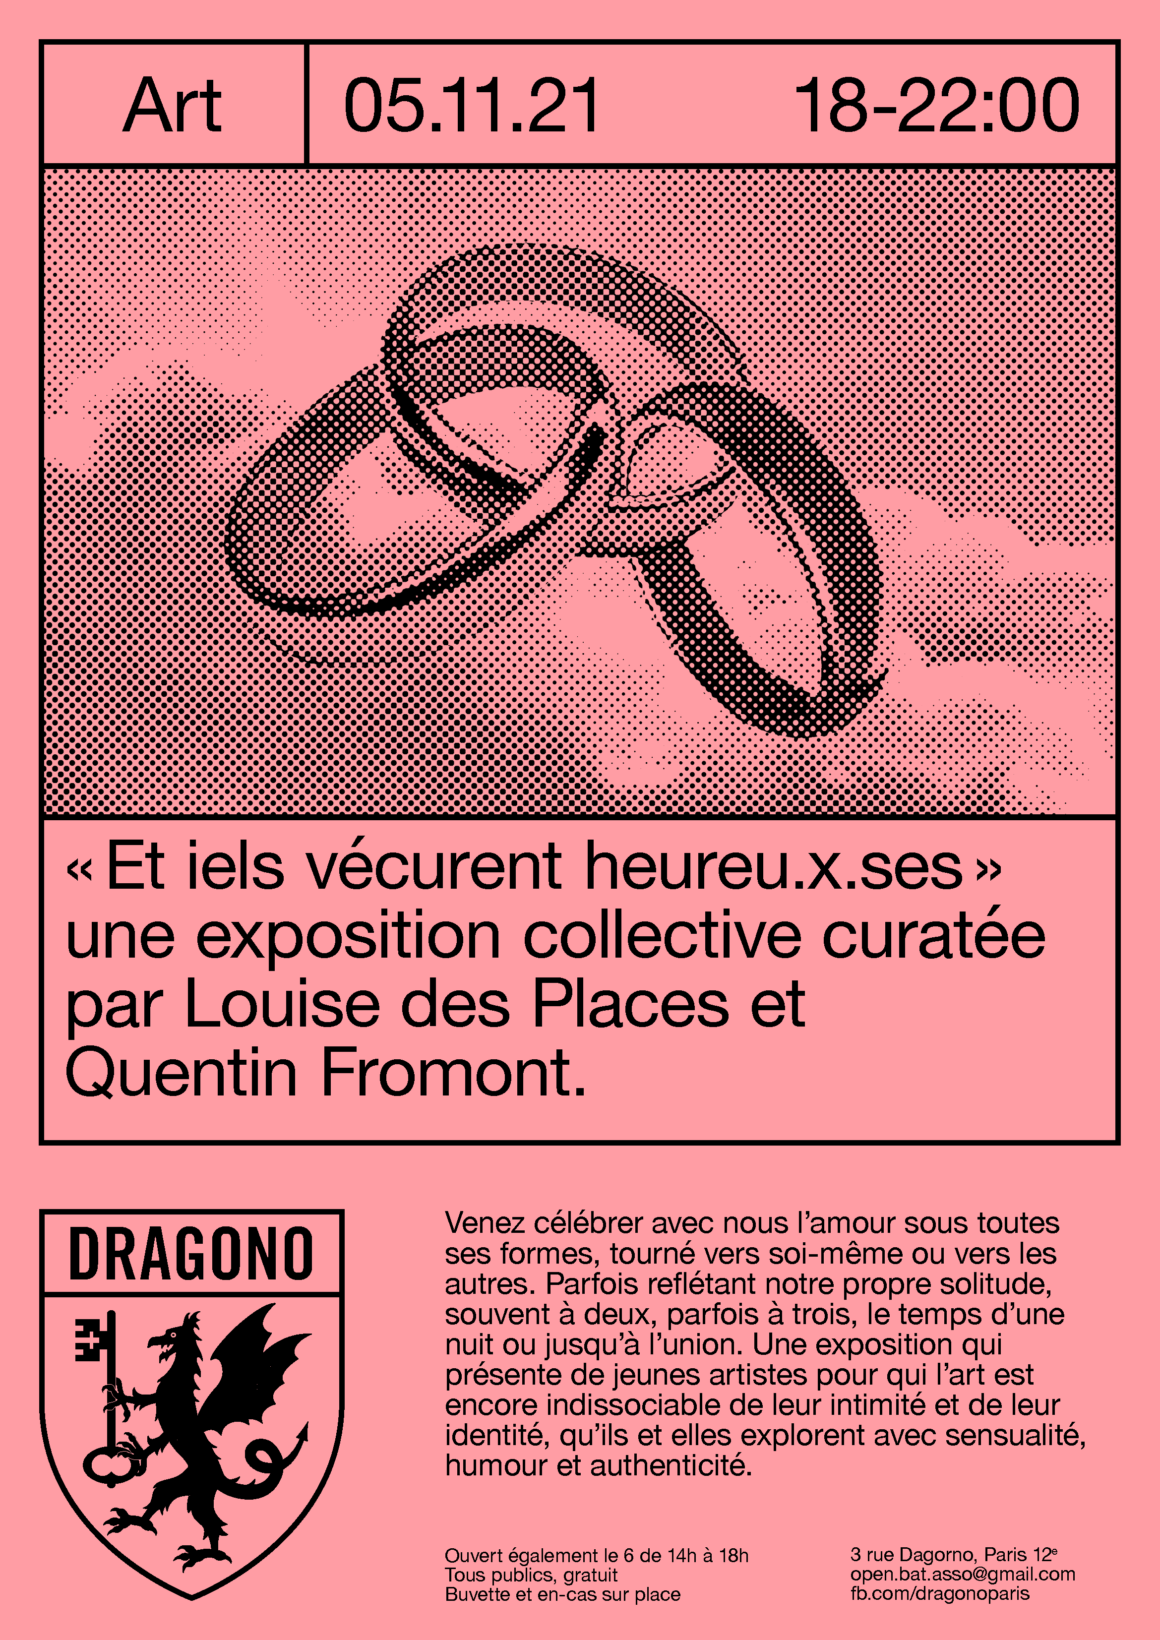 Affiche de l'exposition "Et iels vécurent heureu.x.ses", curatée par Quentin Fromont et Louise des Places